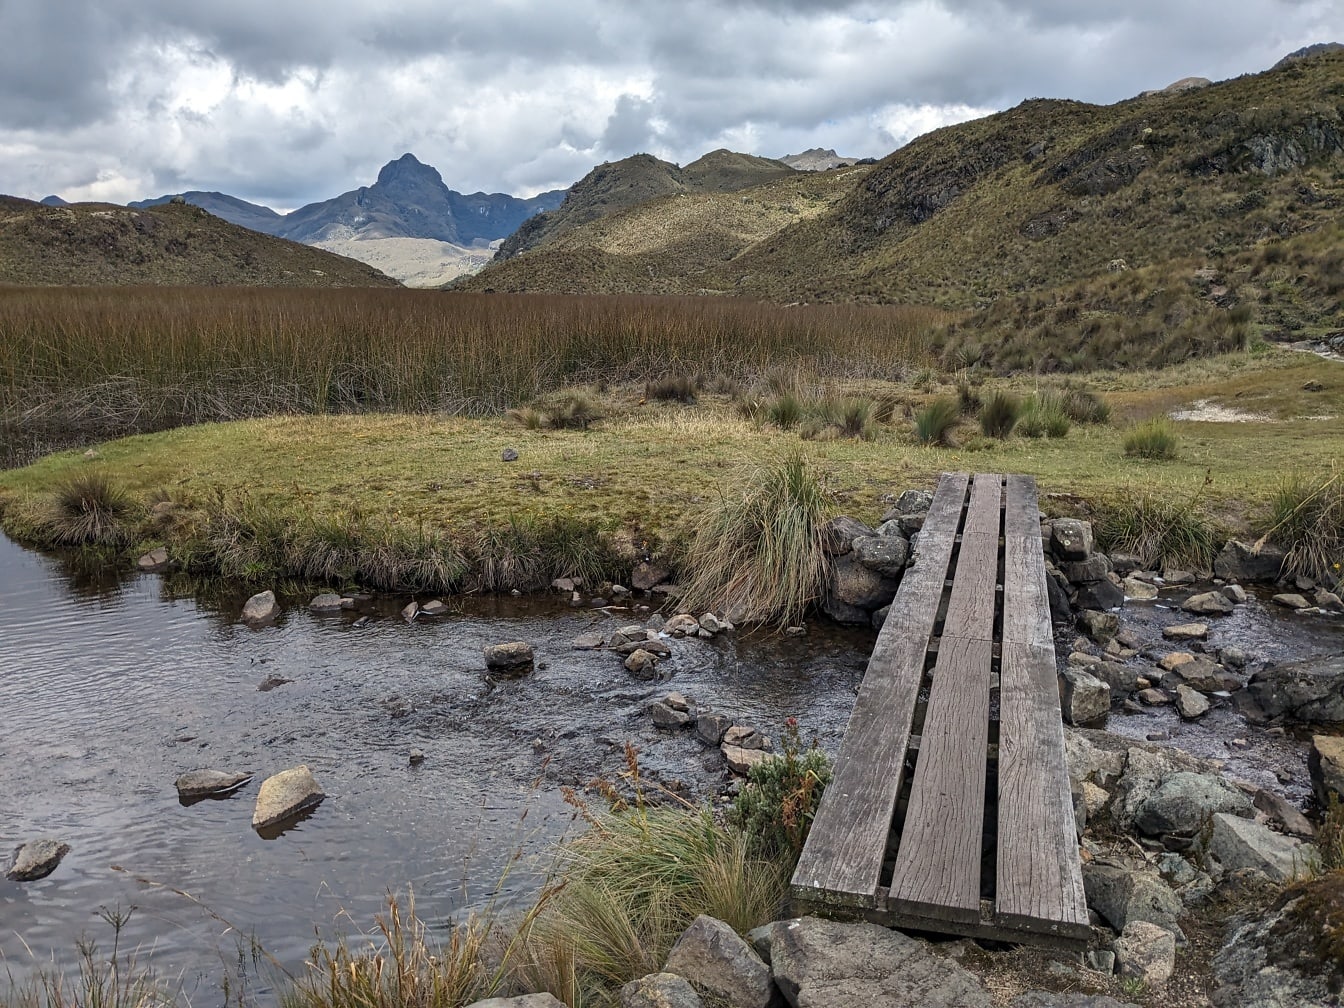 Cây cầu gỗ được làm từ ba tấm ván bắc qua một con suối trong công viên tự nhiên Cajas ở bang Cuenca, Ecuador